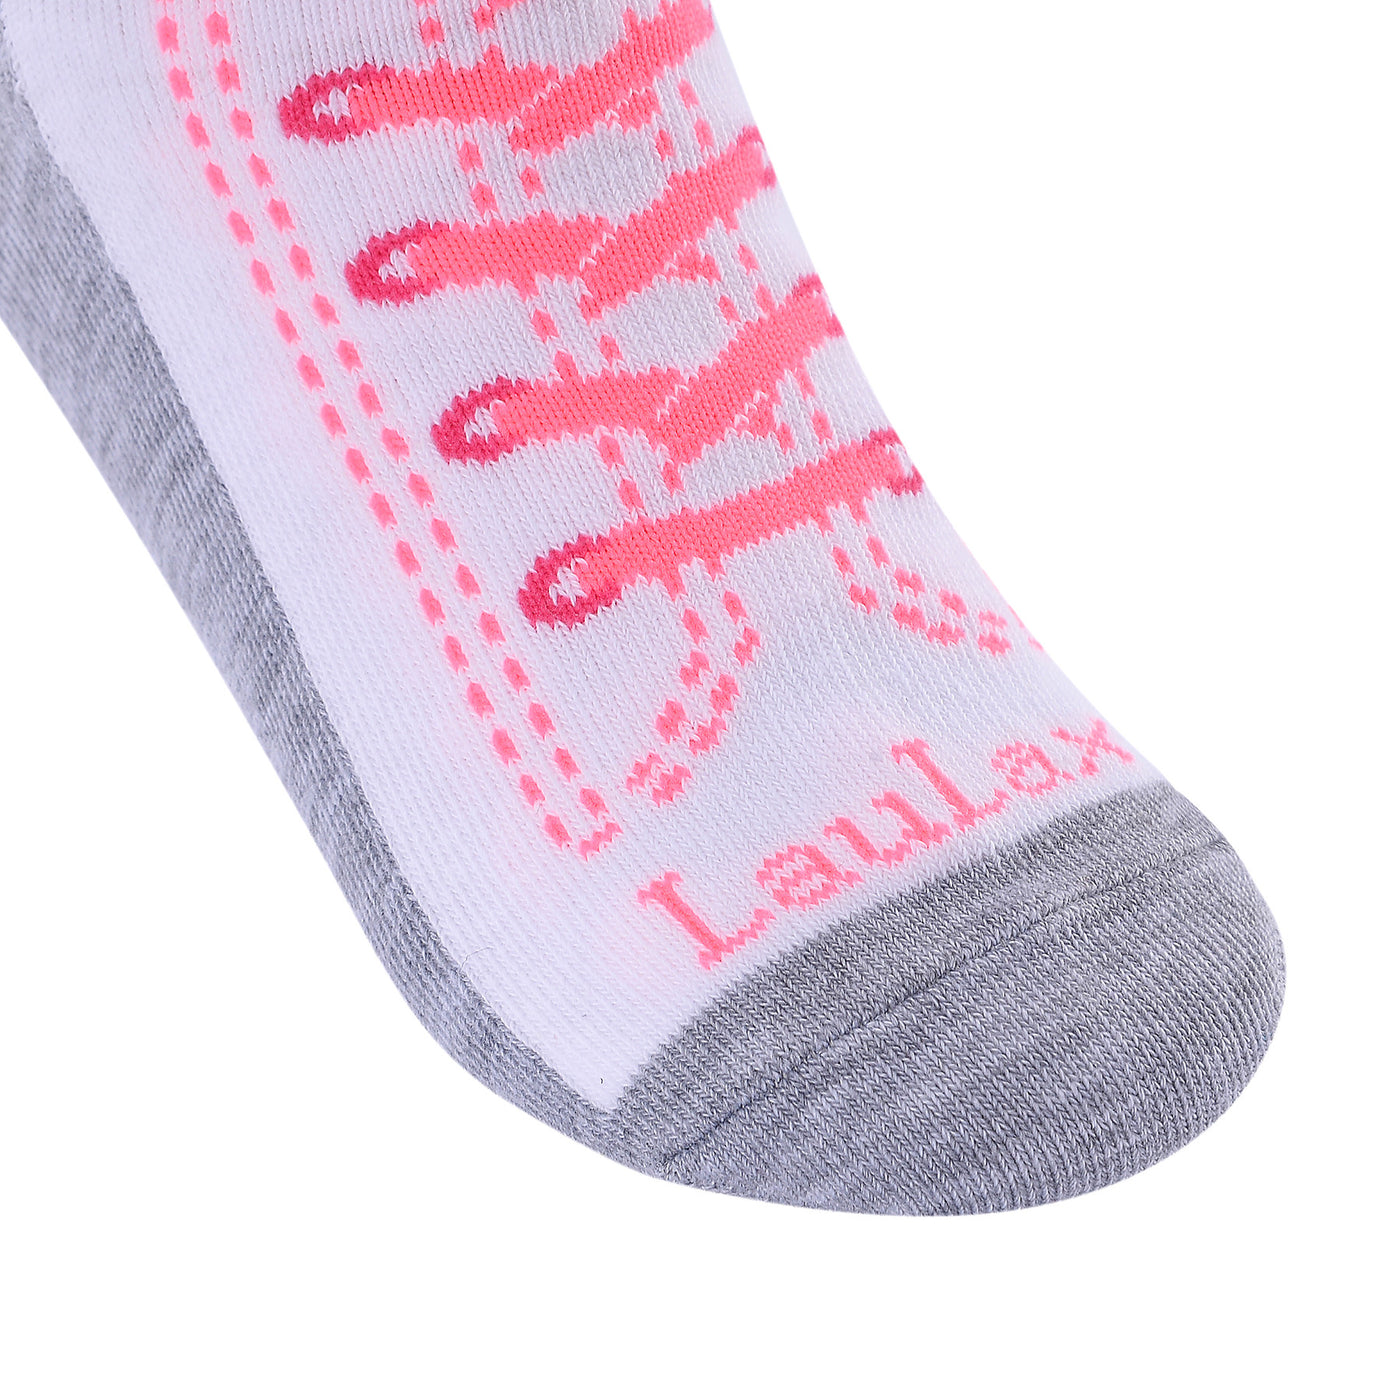 Shoes Design Laulax 6 pares de calcetines de algodón peinado para niña, talla UK 6-8,5/Europa 23-26, set de regalo